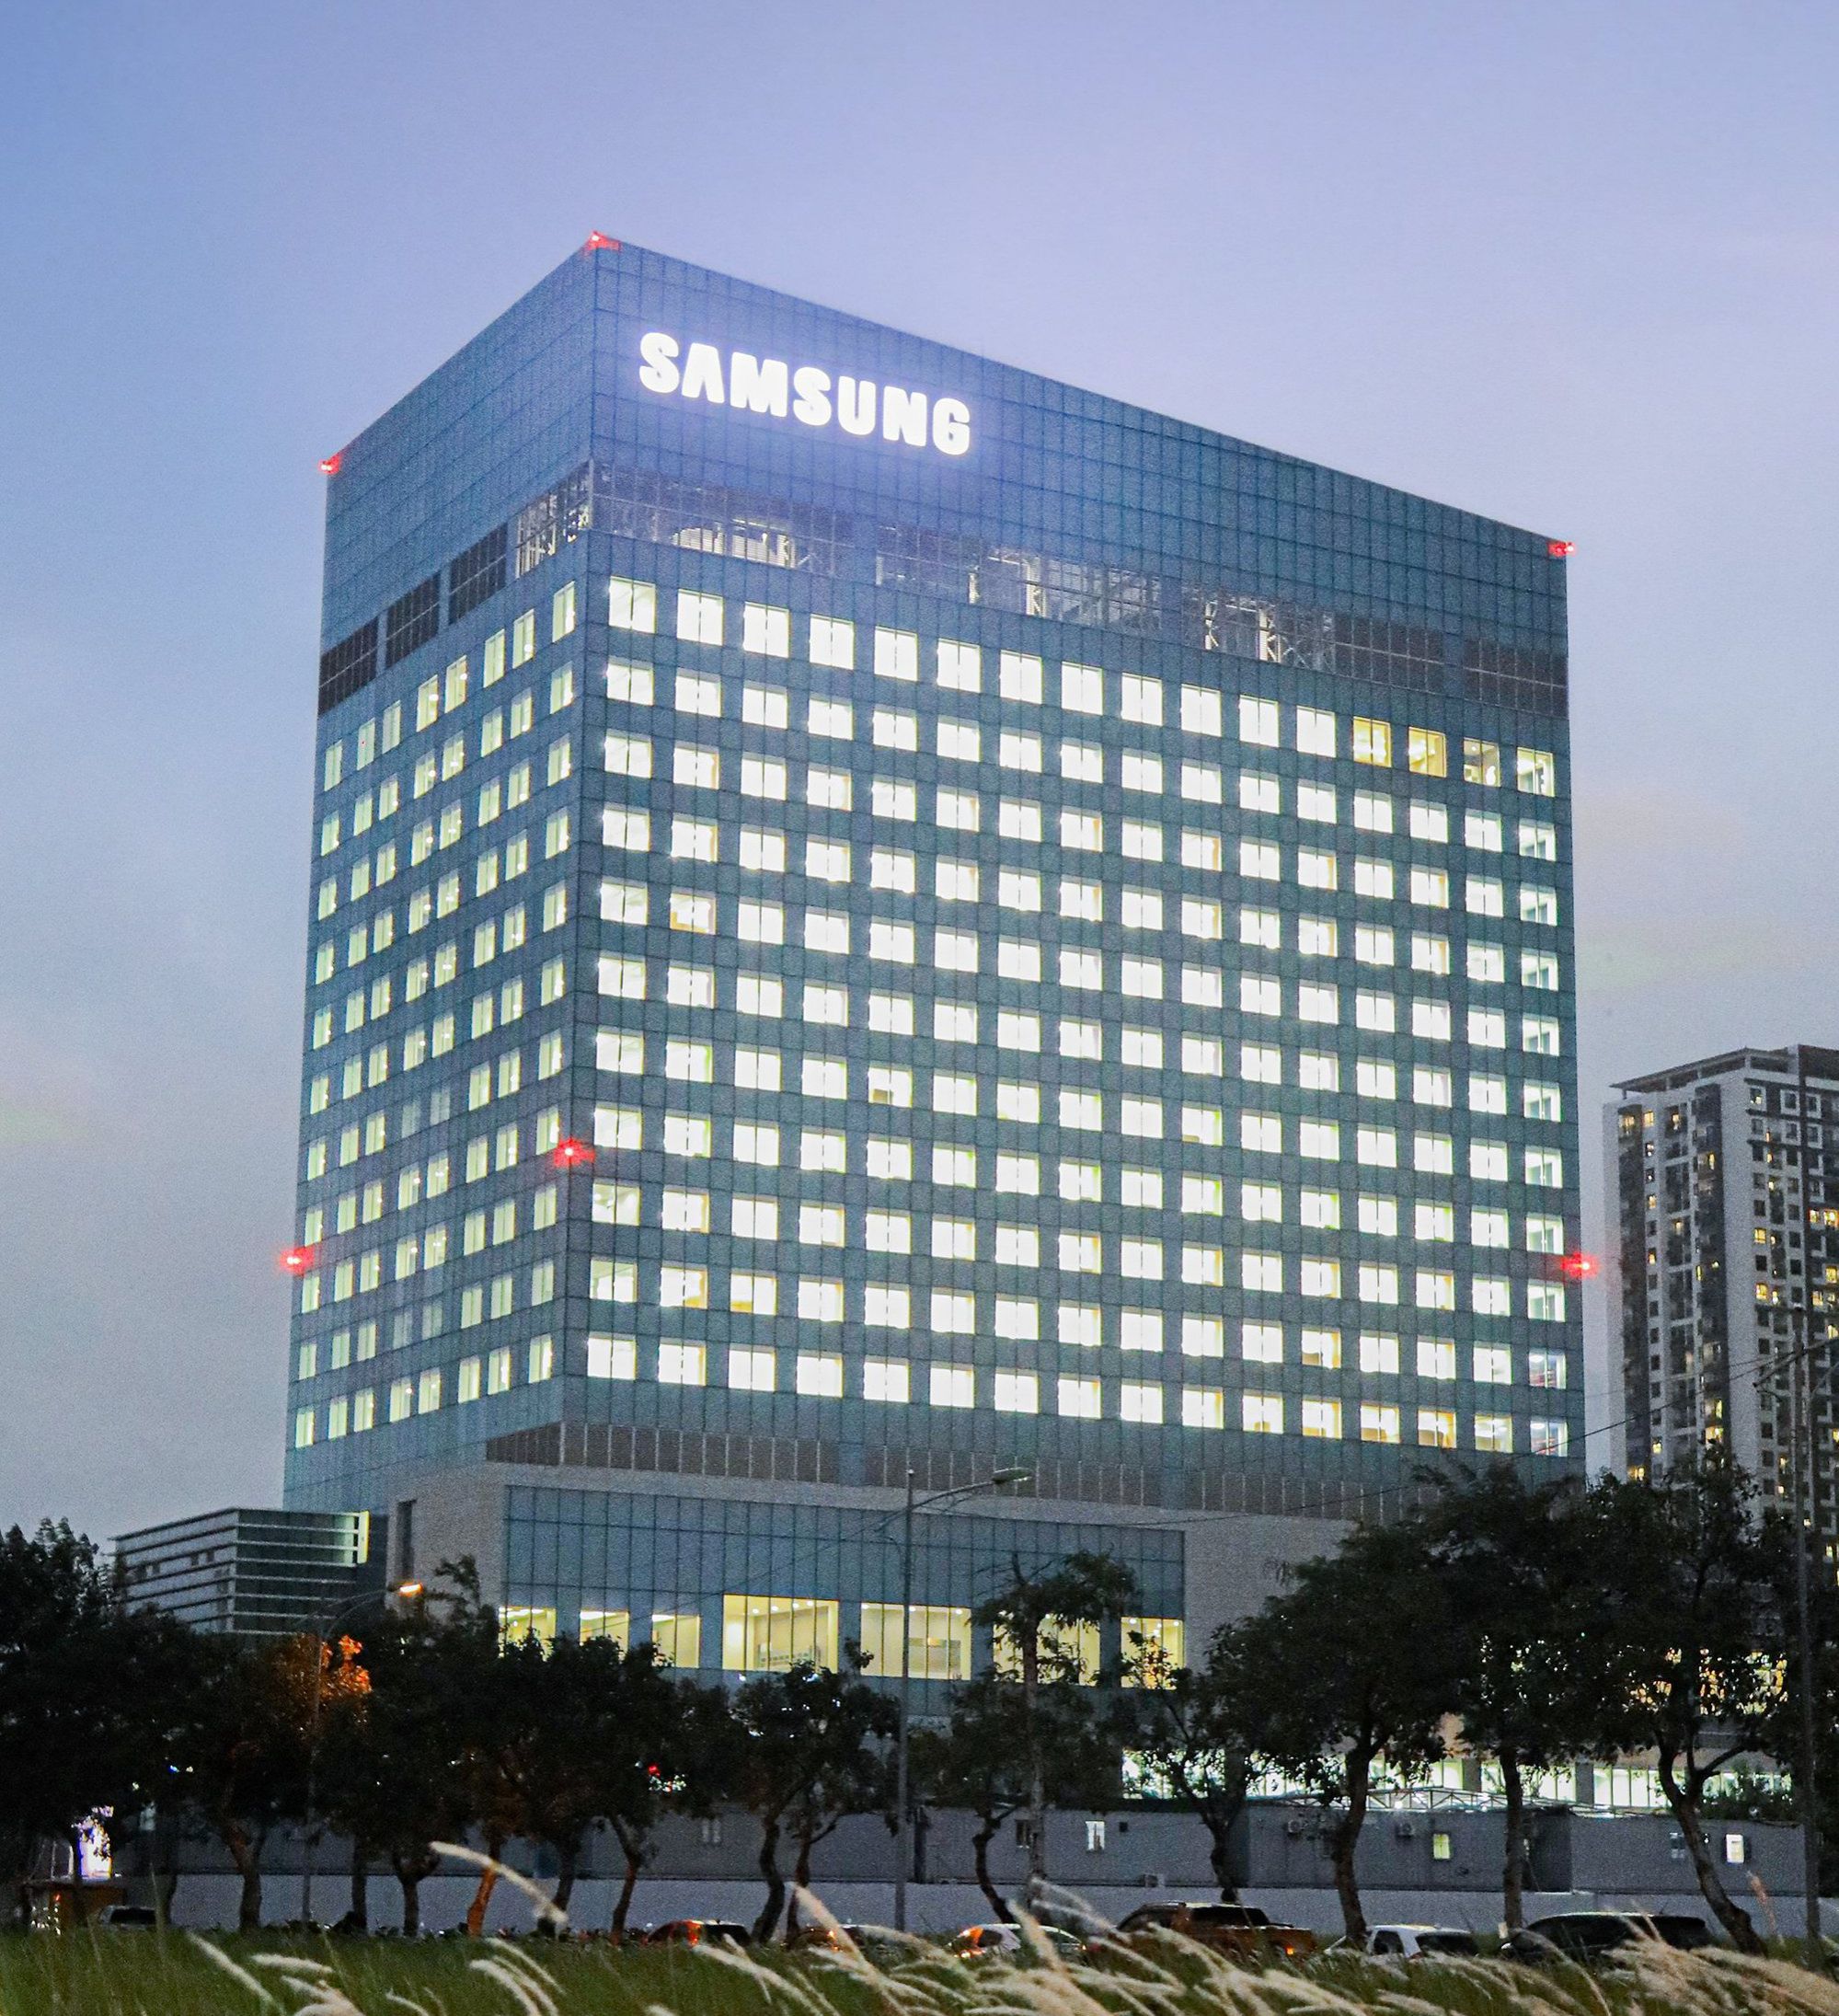 Trung tâm R&D của Samsung sắp được đưa vào hoạt động sẽ tạo tiền đề để doanh nghiệp đi trước đón đầu các cơ hội do cách mạng công nghiệp 4.0 mang lại